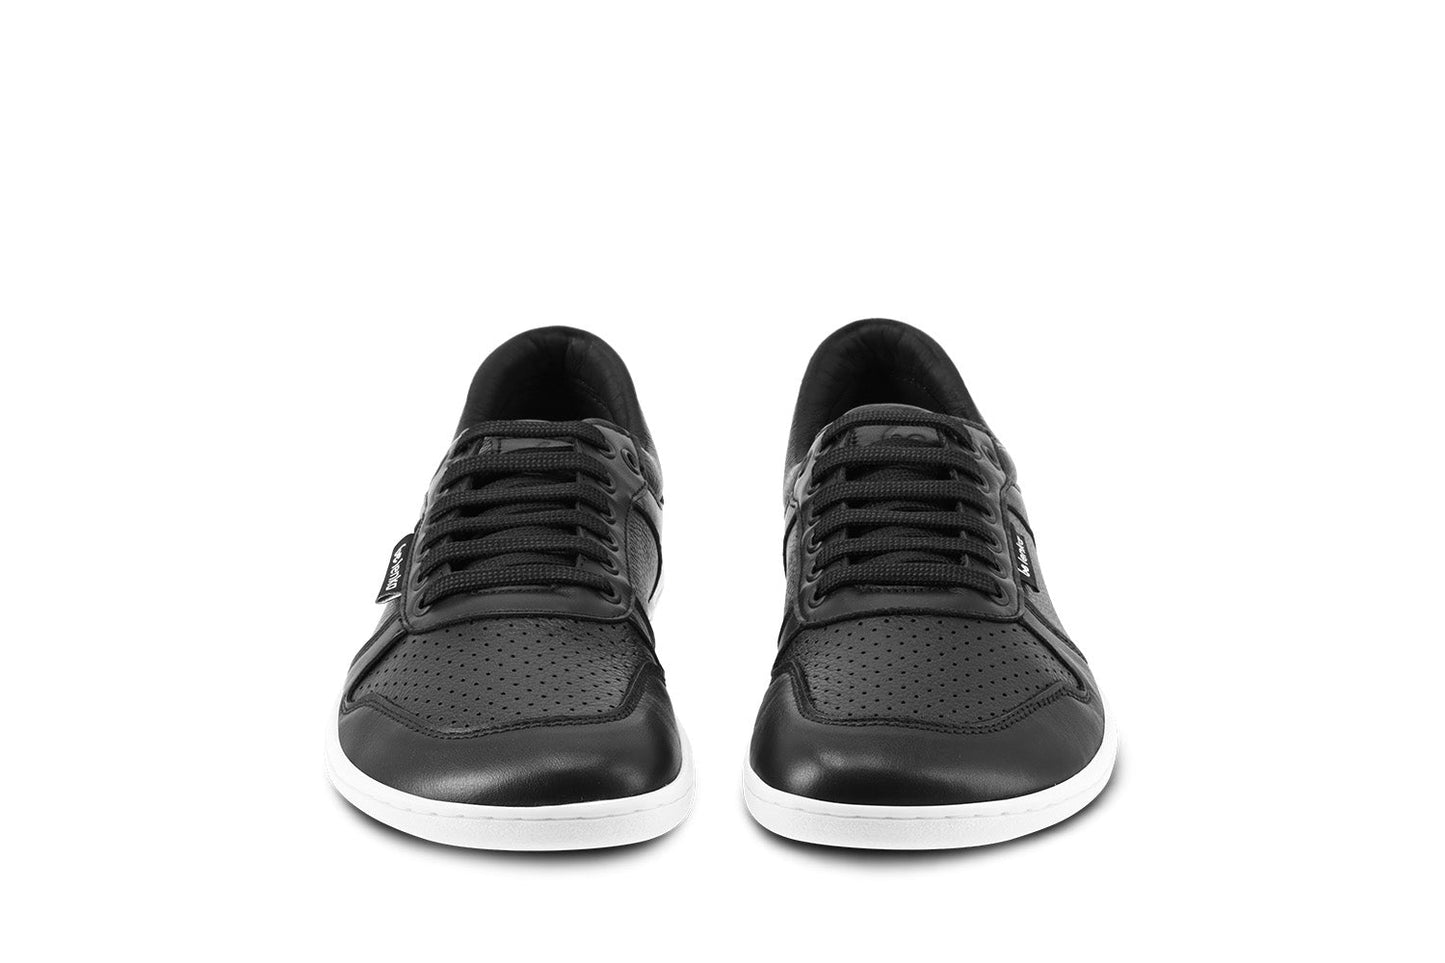 Barefoot Sneakers - Be Lenka Champ 3.0 - Black & White 11 OzBarefoot Australia